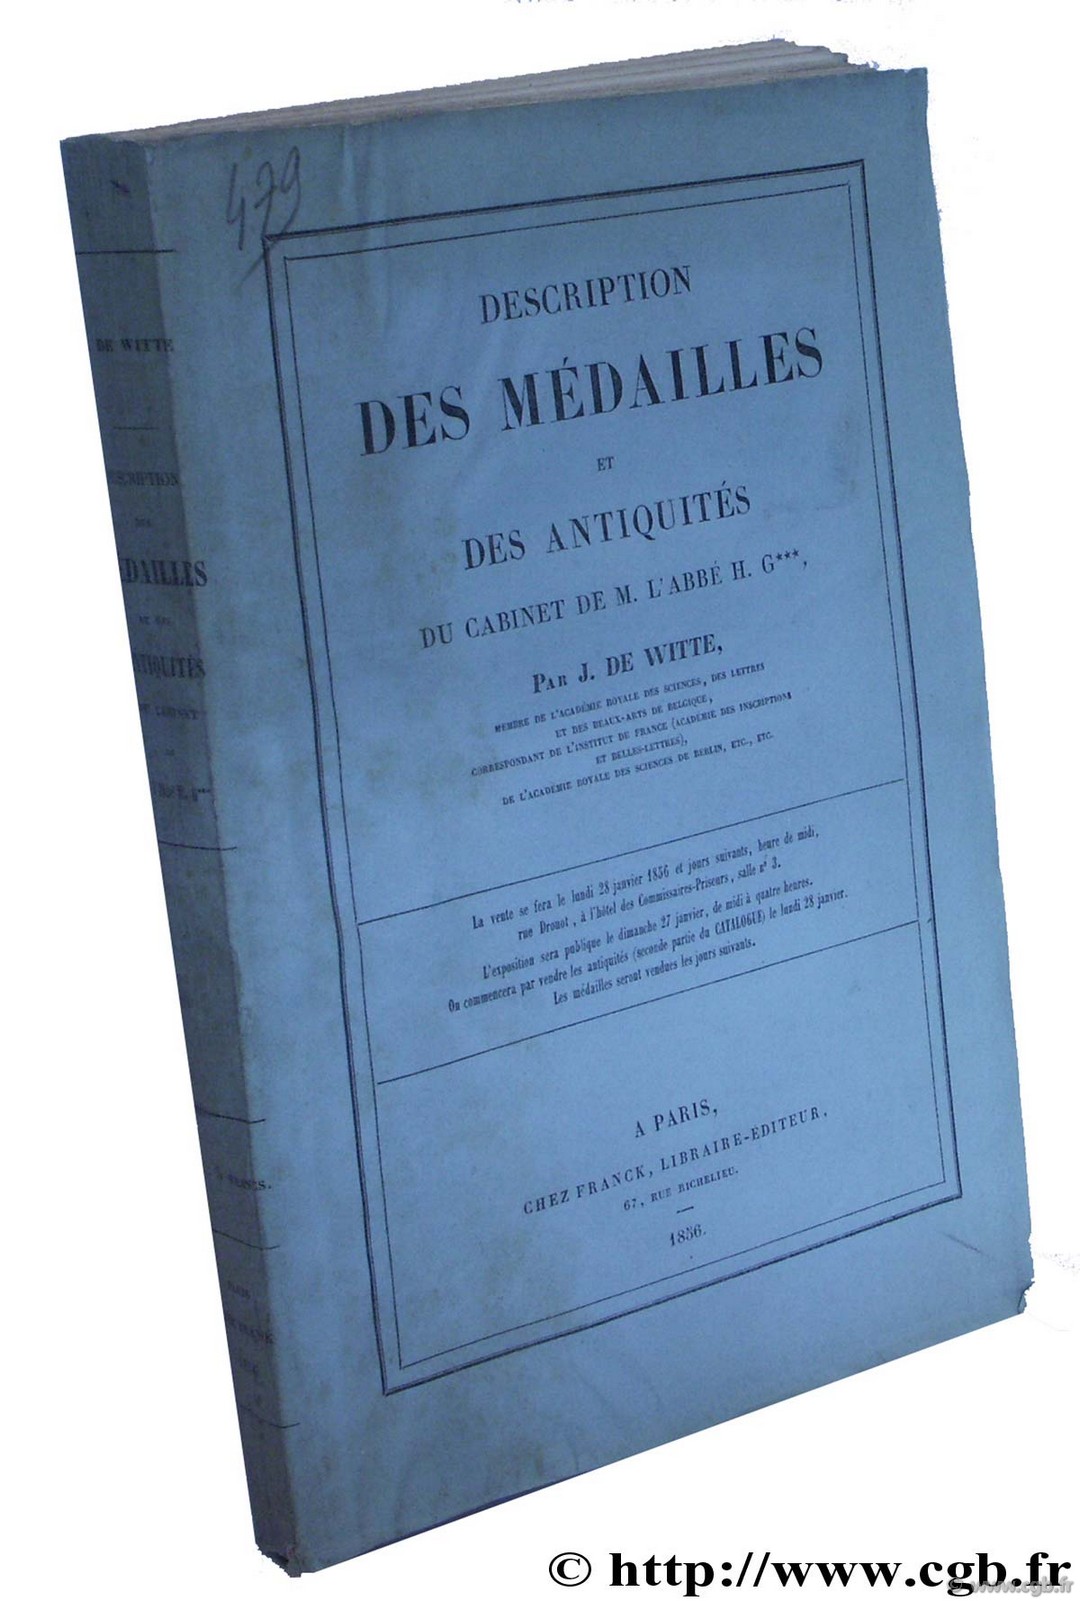 Description des médailles et des antiquités du cabinet de M. de l abbé H. G.*** DE WITTE J.